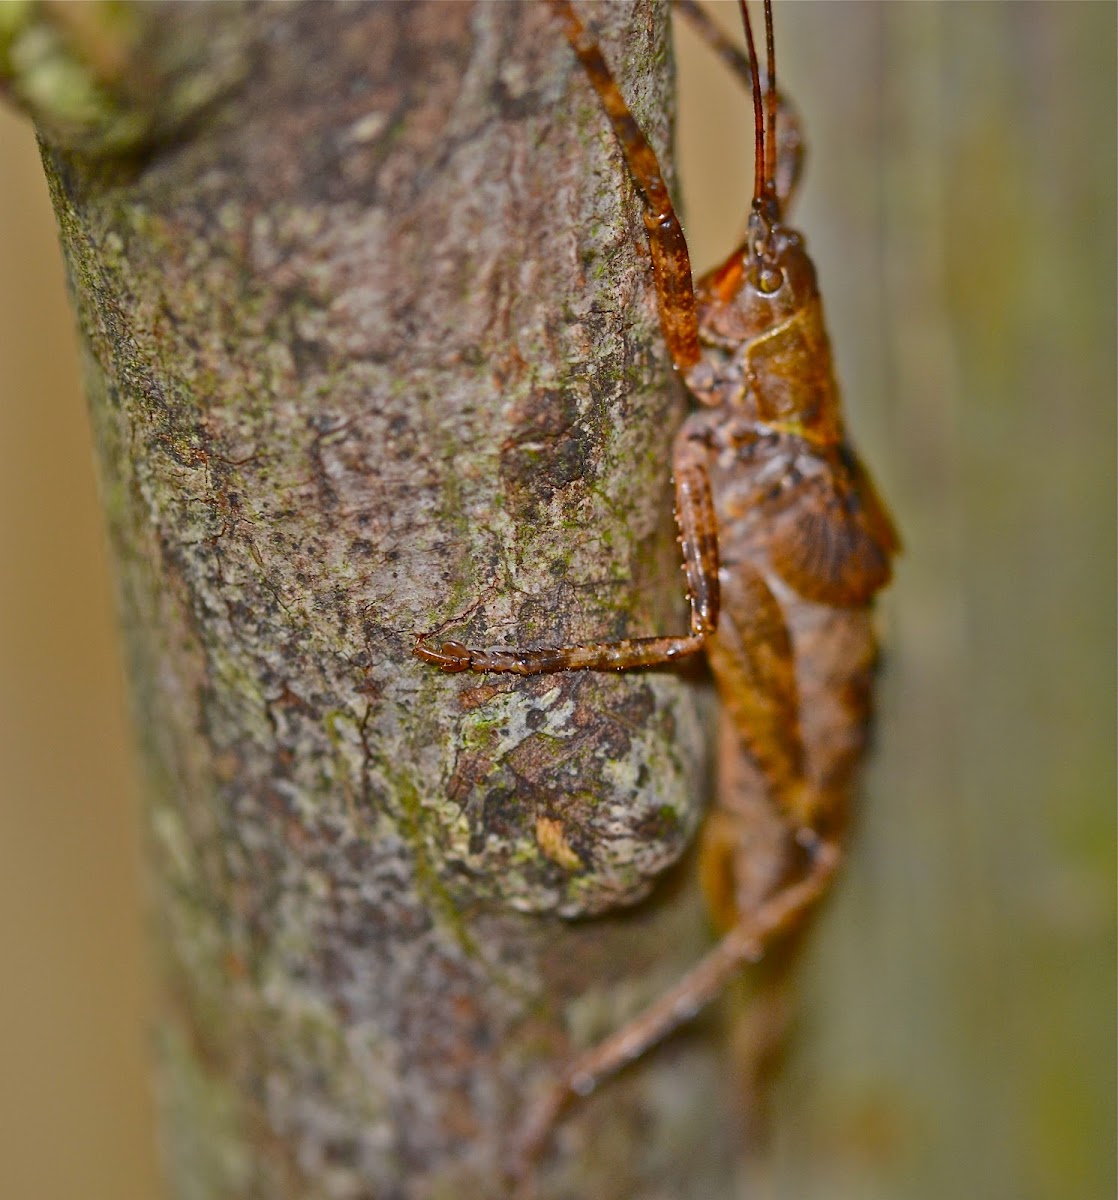 Grasshopper/cricket/Locust?